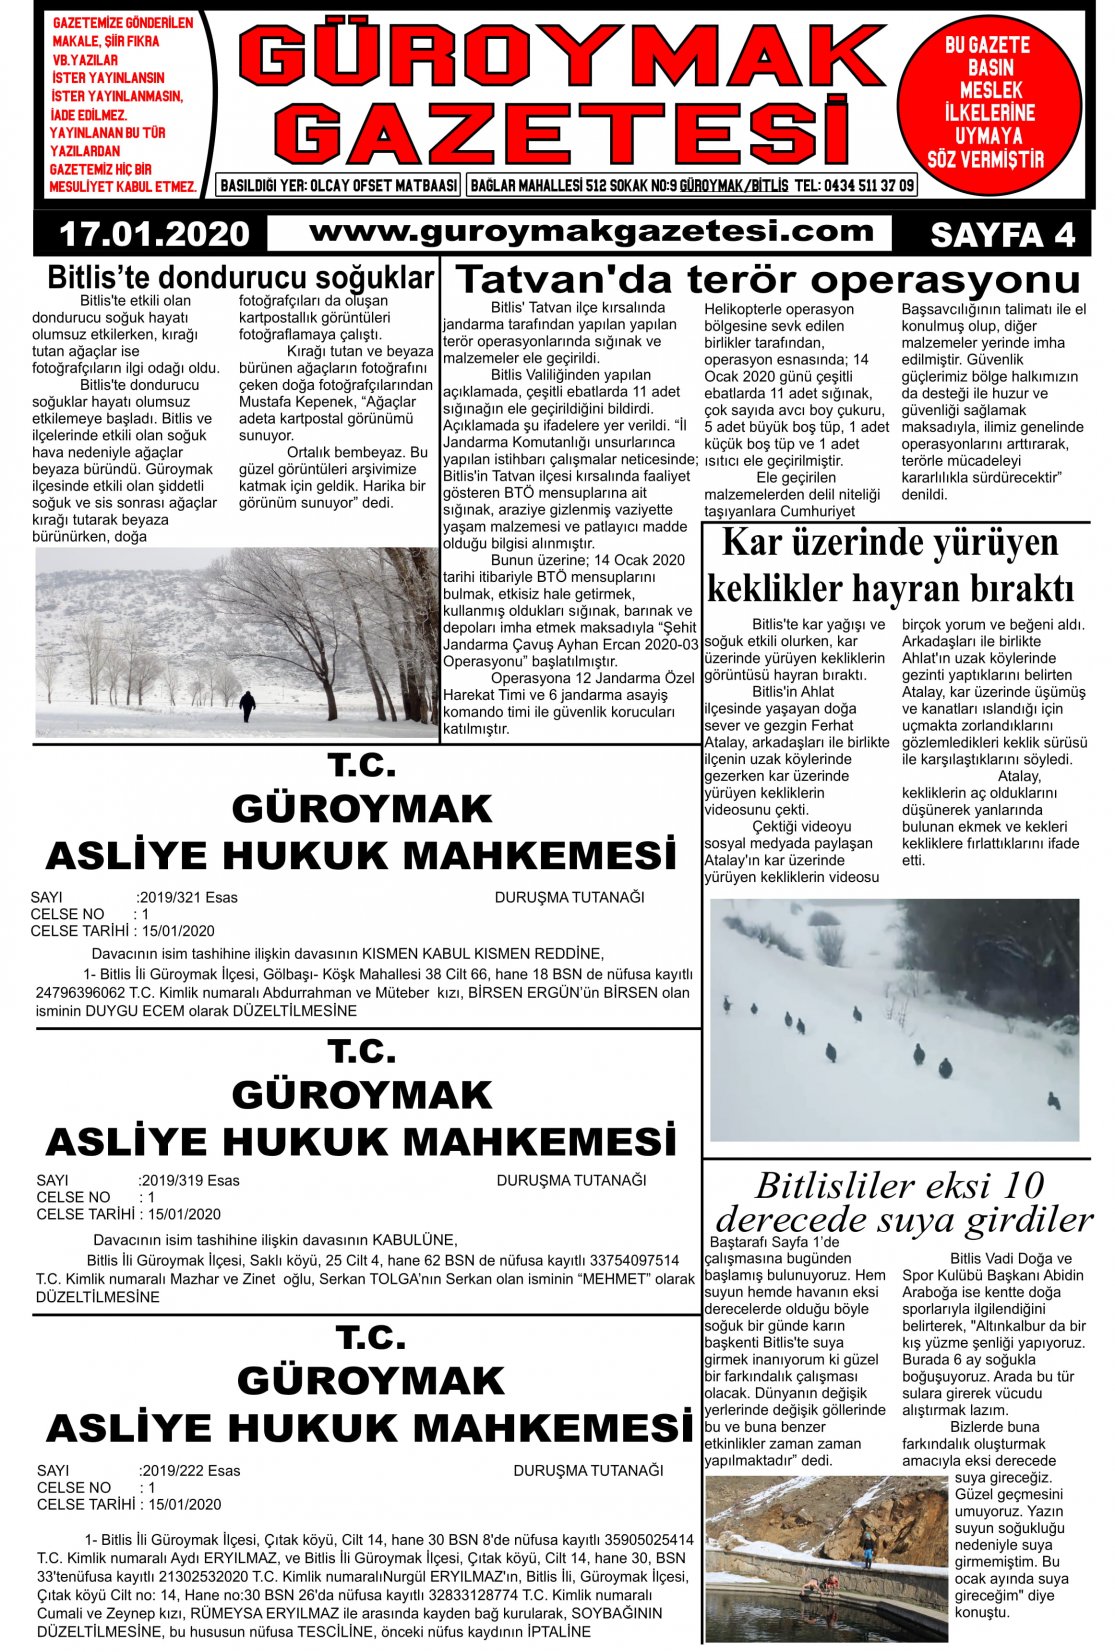 Güroymak Gazetesi 4-1.jpg Sayılı Gazete Küpürü